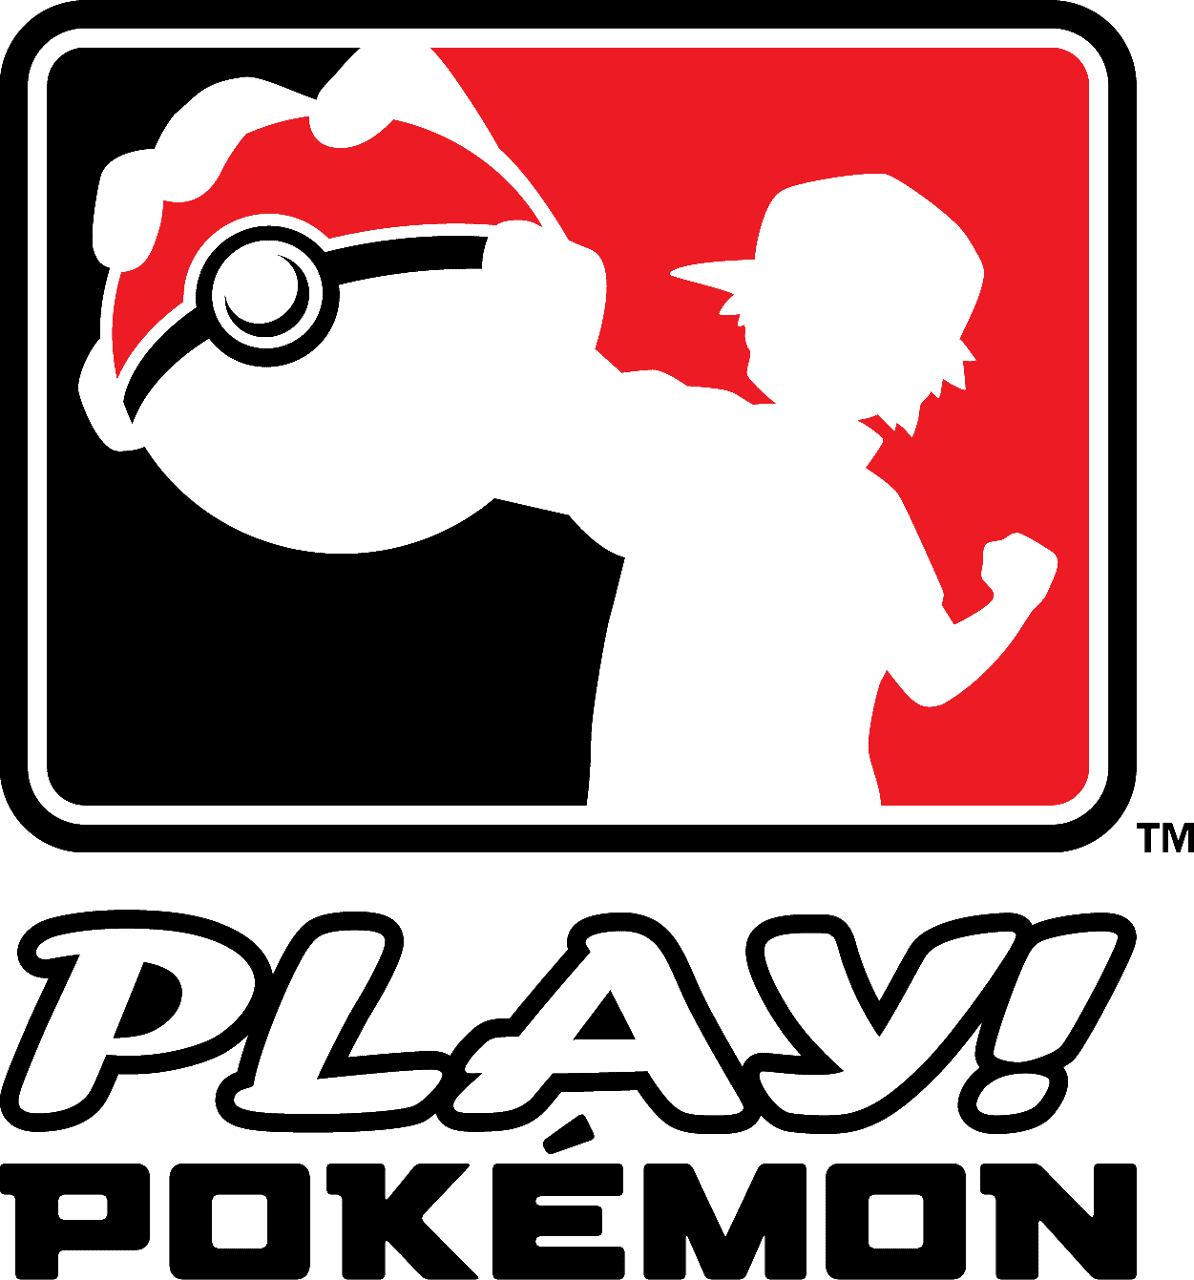 Vancouver Ciudad Anfitriona del Pokémon World Championship en el 2013